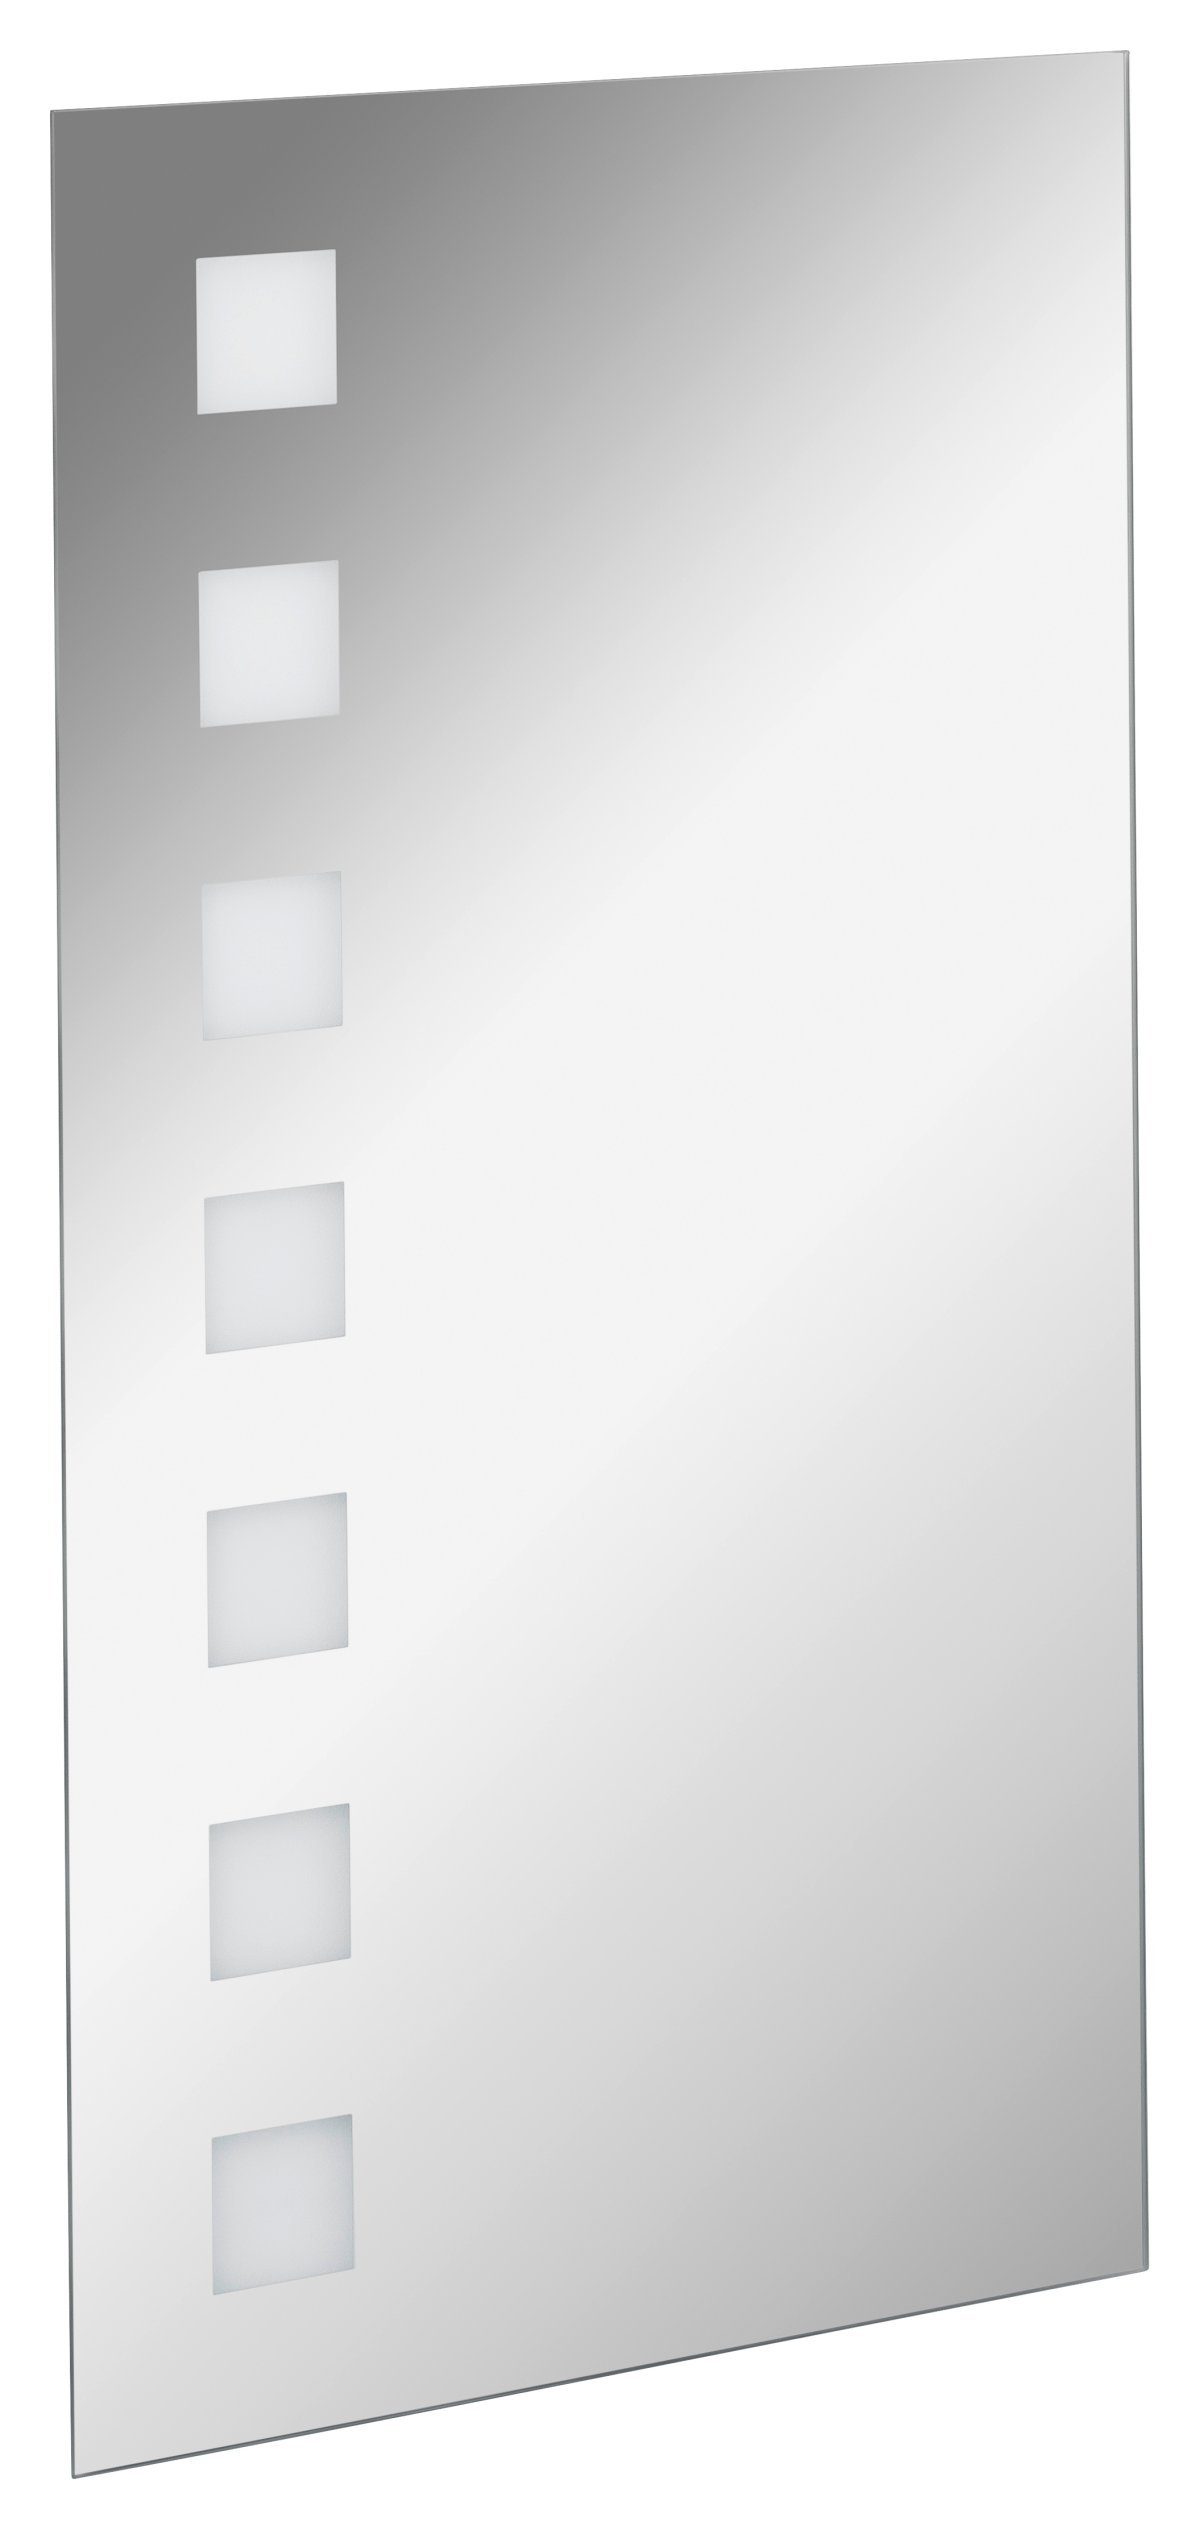 FACKELMANN Badspiegel Mirrors Spiegel karo / LED-Beleuchtung / Breite 40 cm / hängend